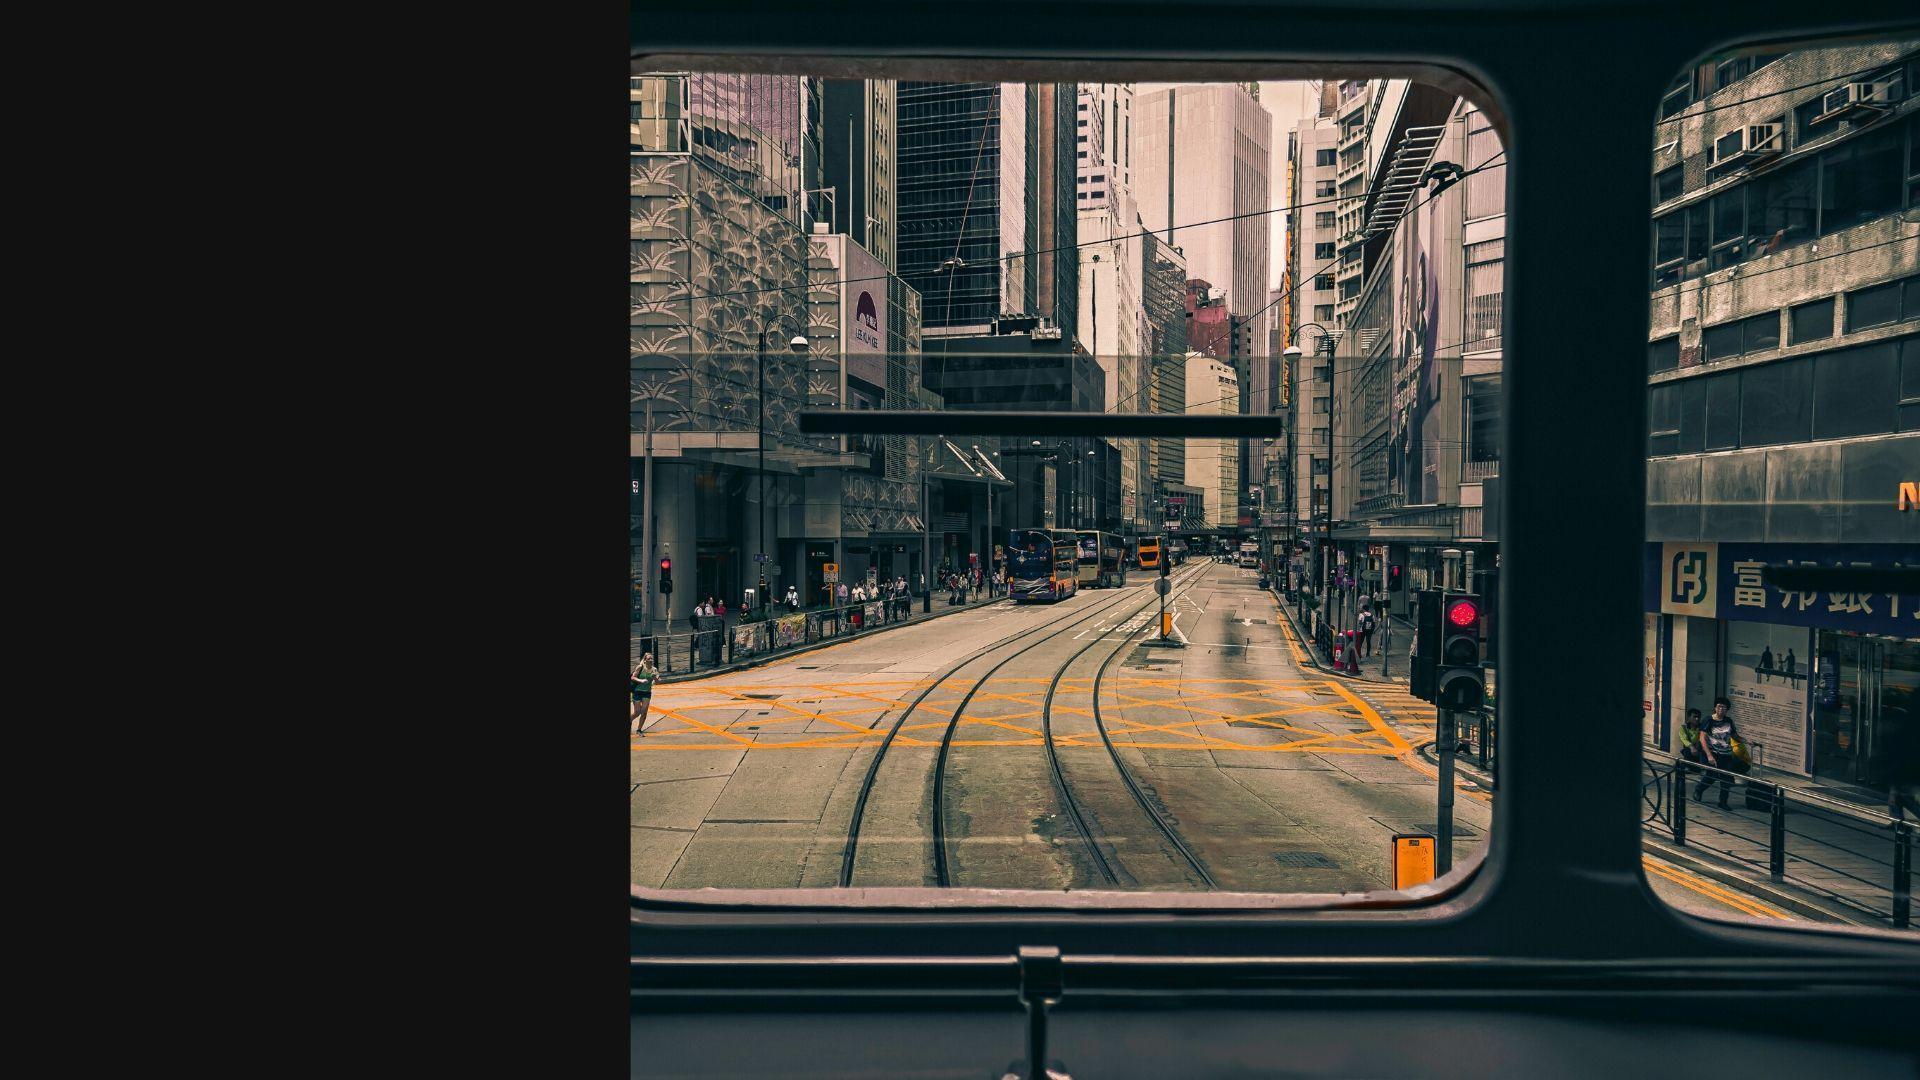 Foto van een zicht op een stad vanuit een trein als sfeerbeeld om het onderdeel scherp webdesign in te leiden